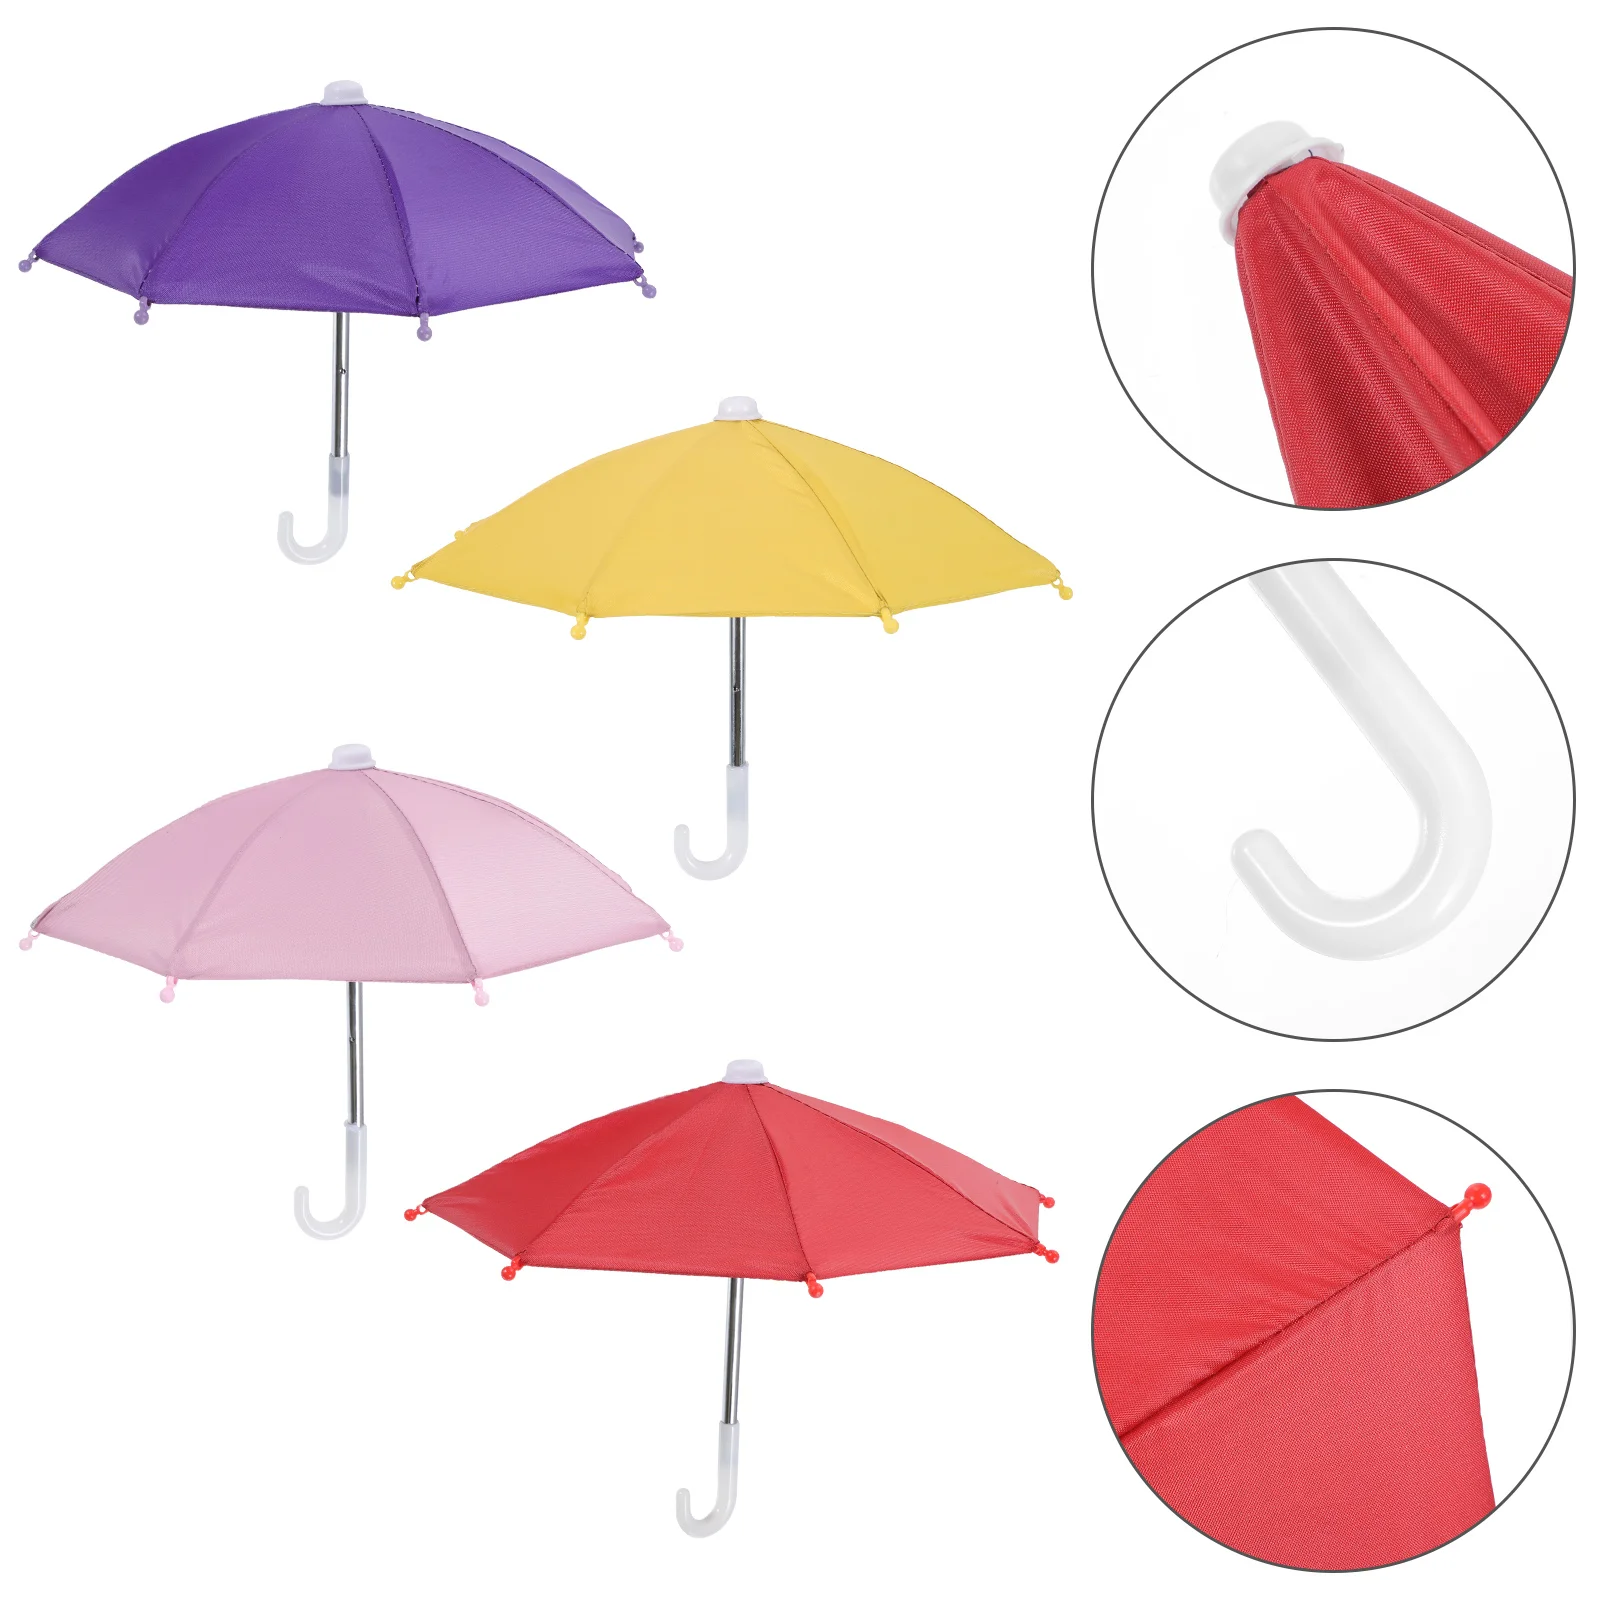 

Велосипедный телефон зонтик технические принадлежности маленькие ремесленные украшения уличные портативные уличные украшения